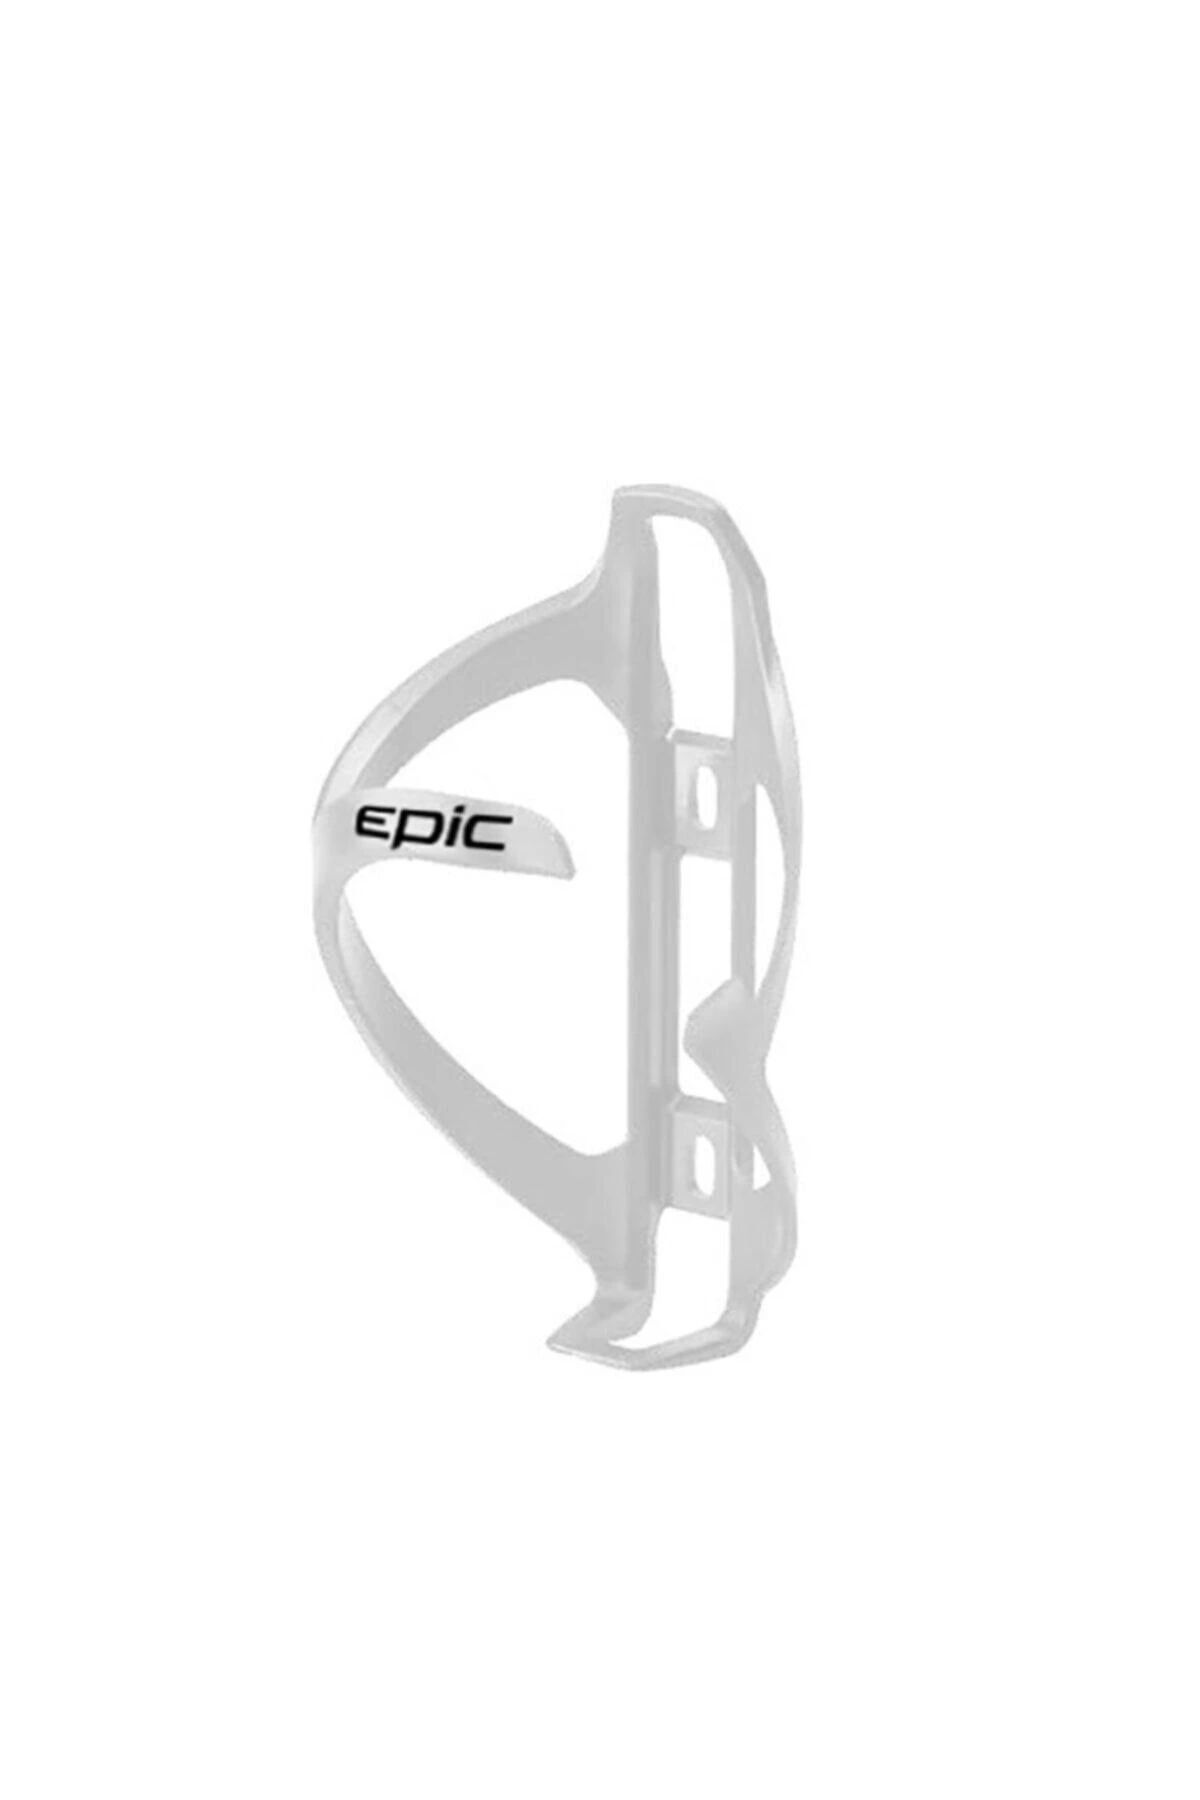 Epic Epıc Suluk Kafesı Epıc Bc-39c Plastık Beyaz Skf-102